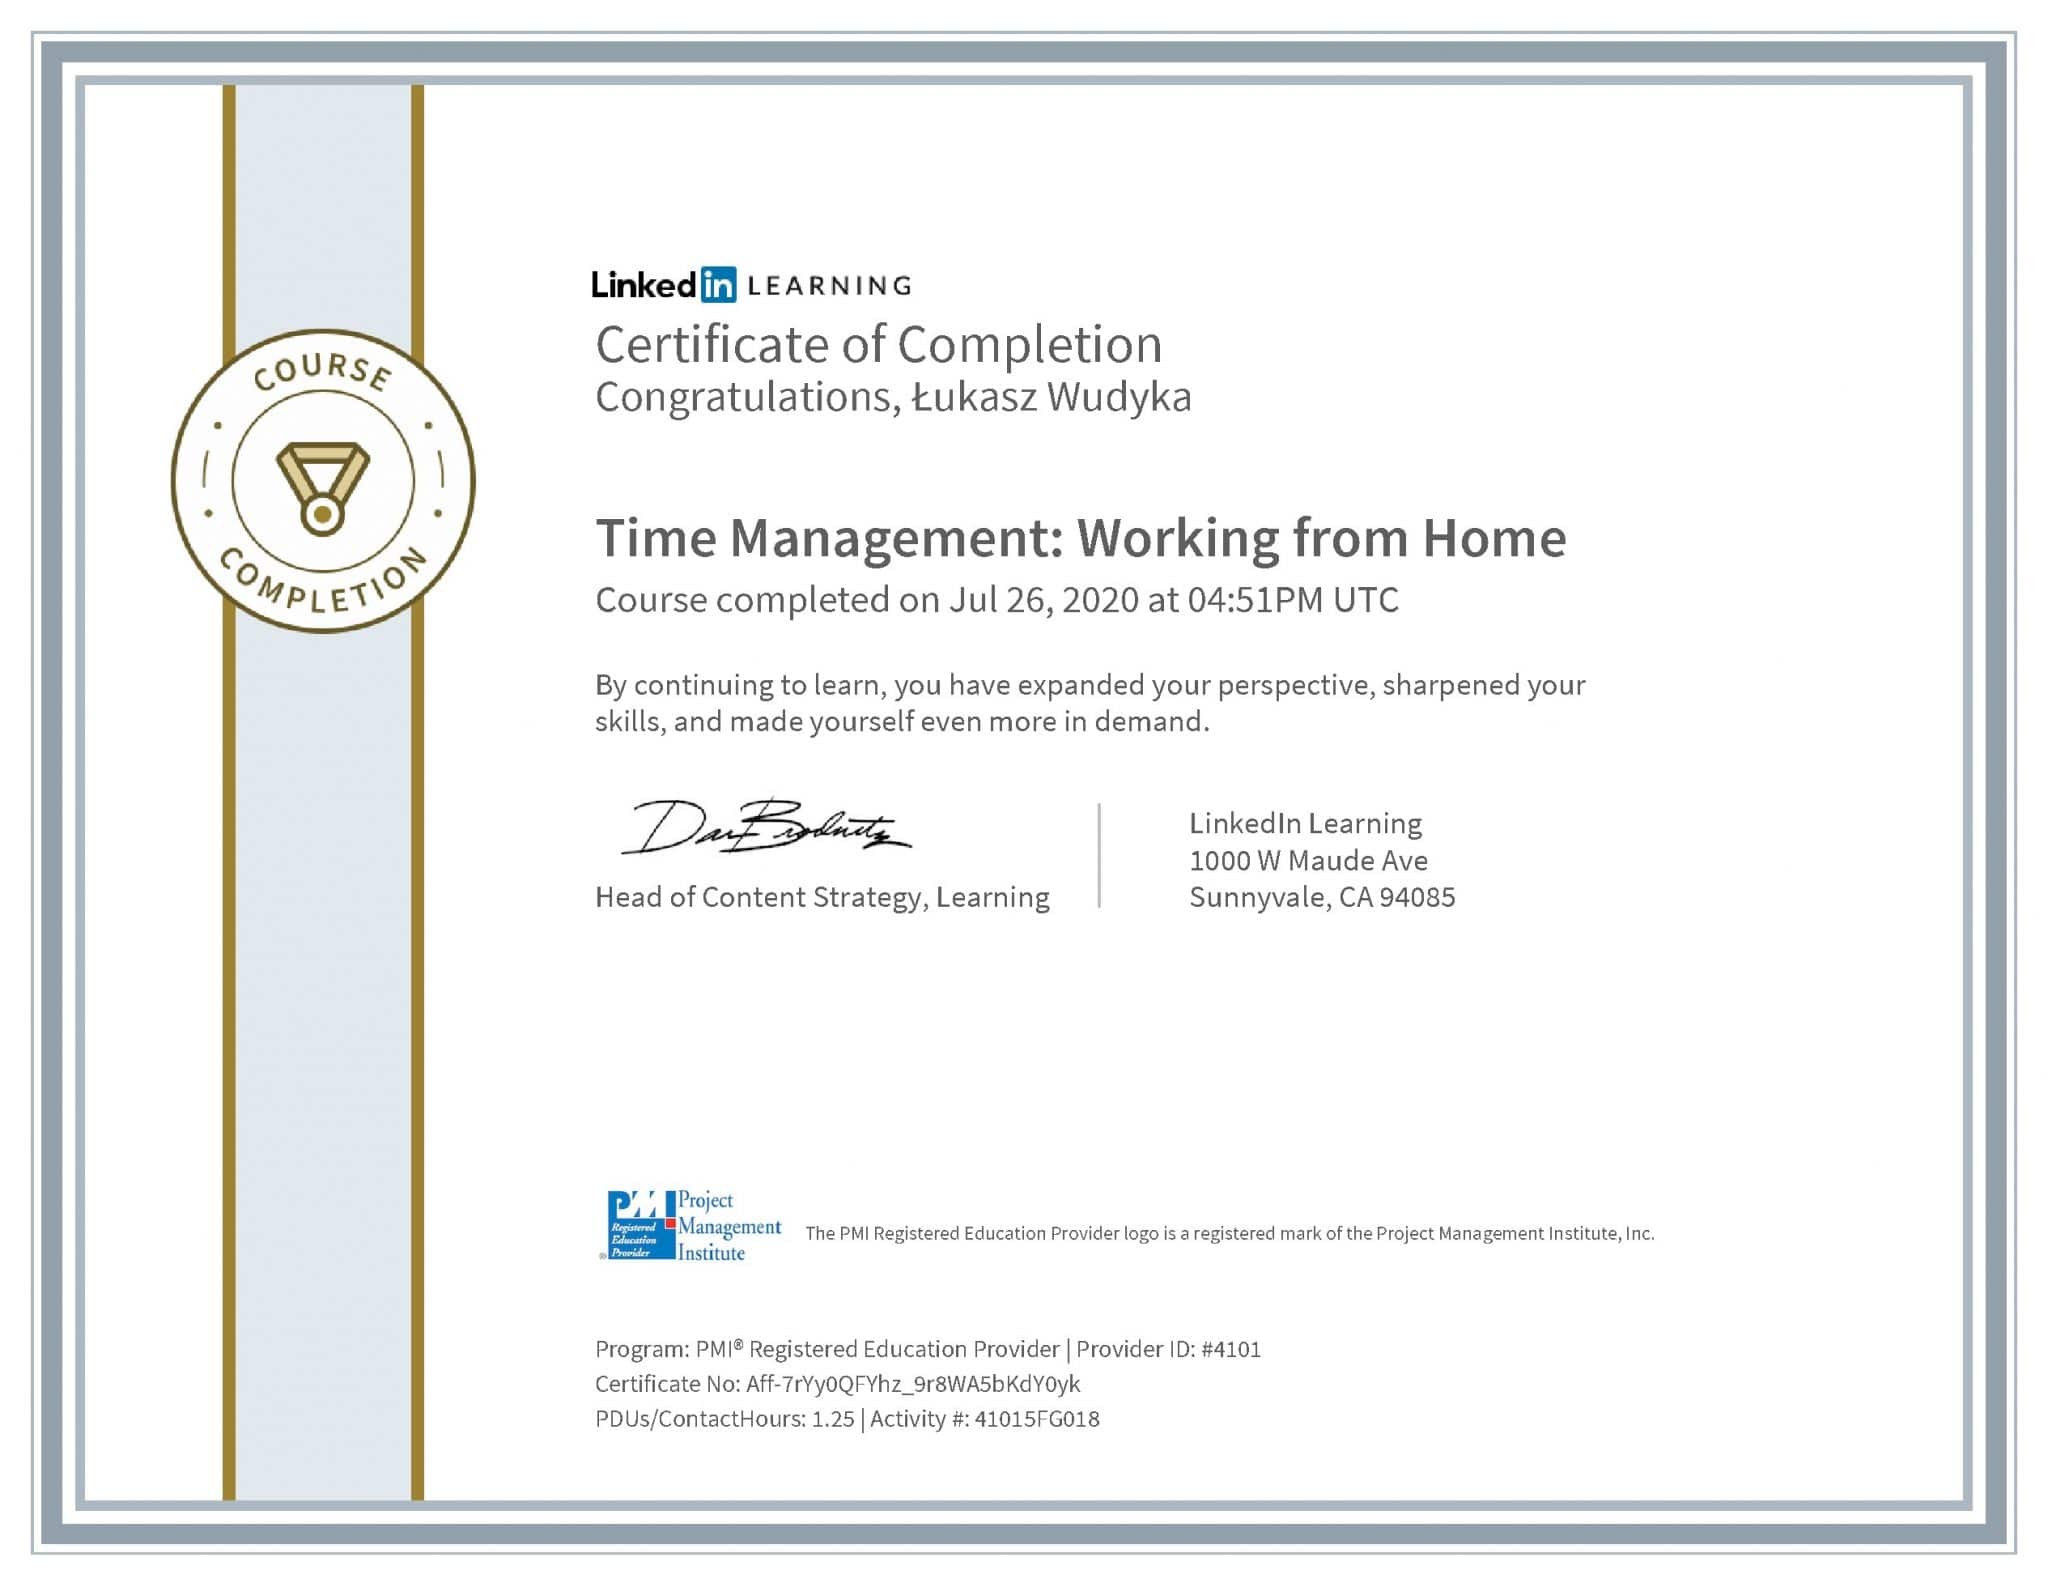 Łukasz Wudyka certyfikat LinkedIn Time Management: Working from Home PMI